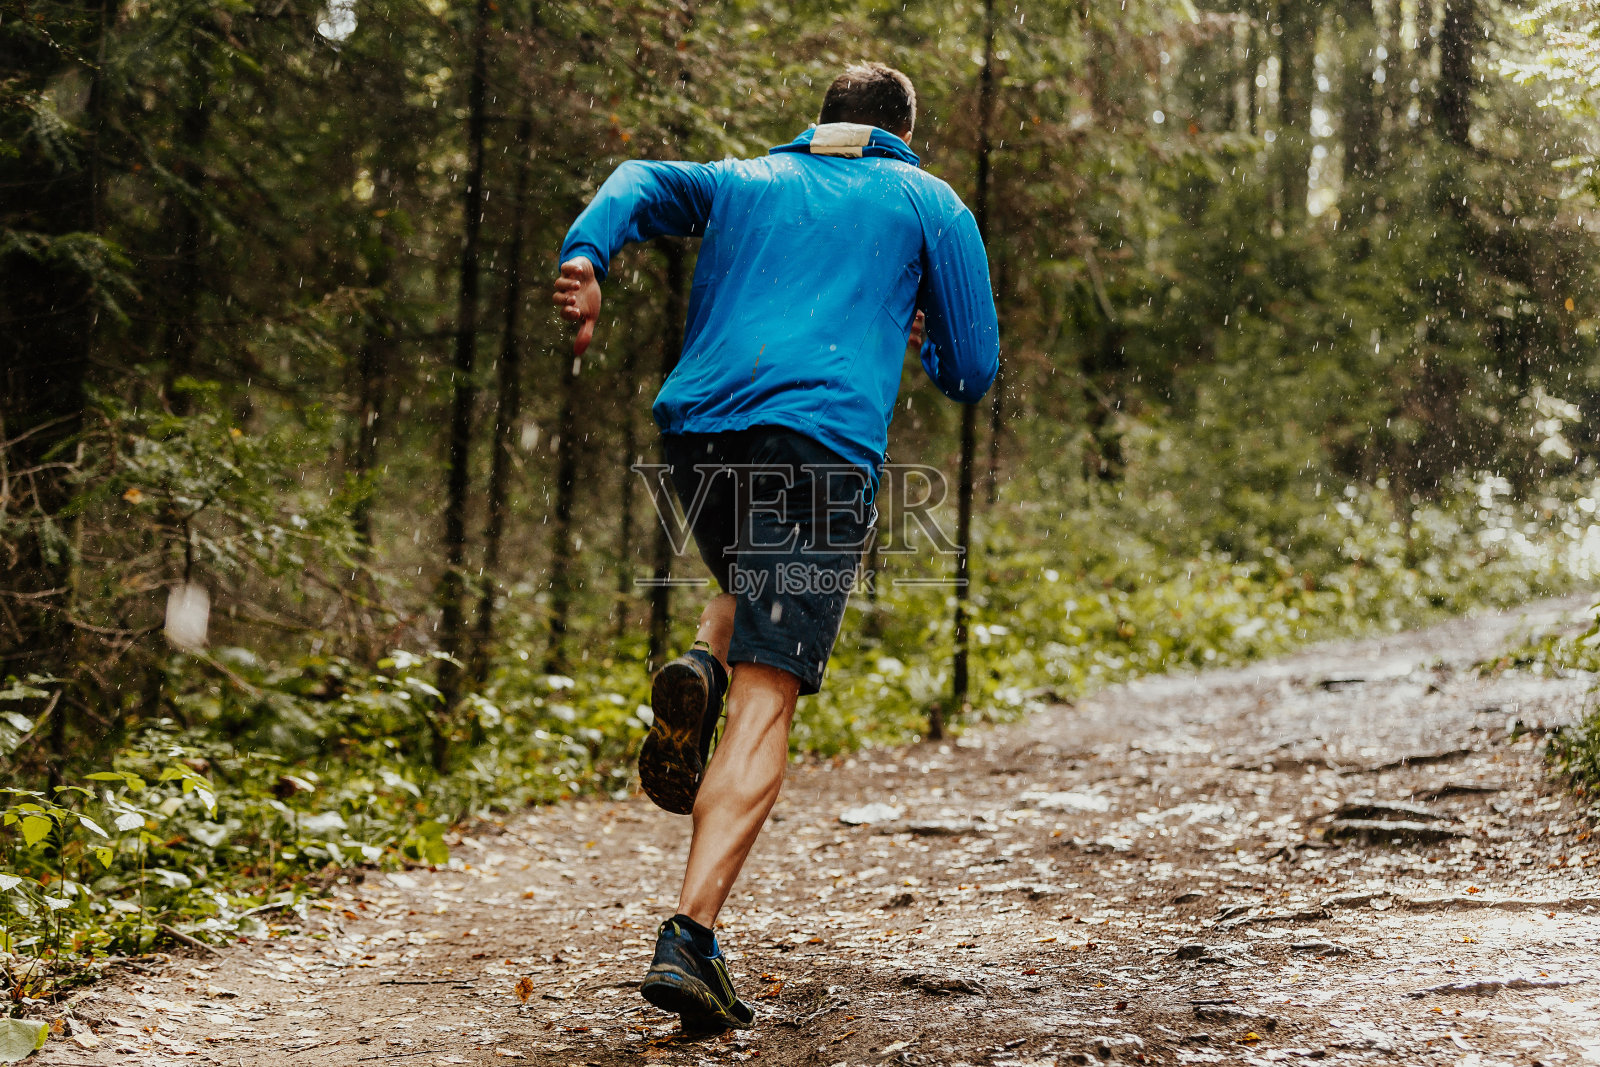 肌肉发达的男性跑步者在雨中快速奔跑森林小径照片摄影图片